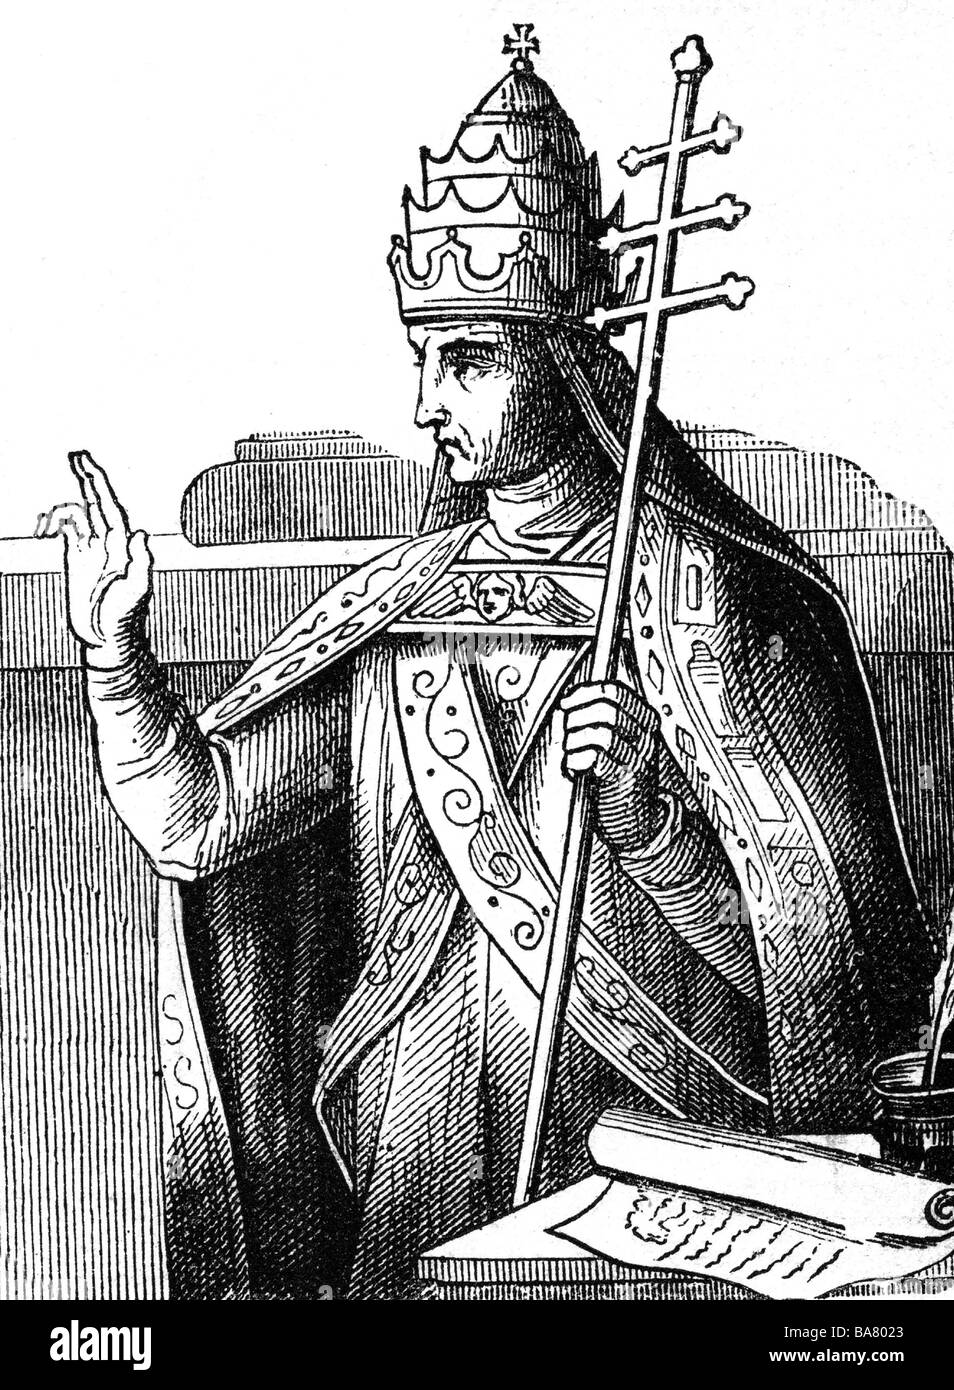 Gregorio i 'il Grande' (Anicius Gregorius), circa 540 - 12.3.604, papa 3.9.590 - 12.3.604, a mezza lunghezza, incisione in legno, 19th secolo, , Foto Stock